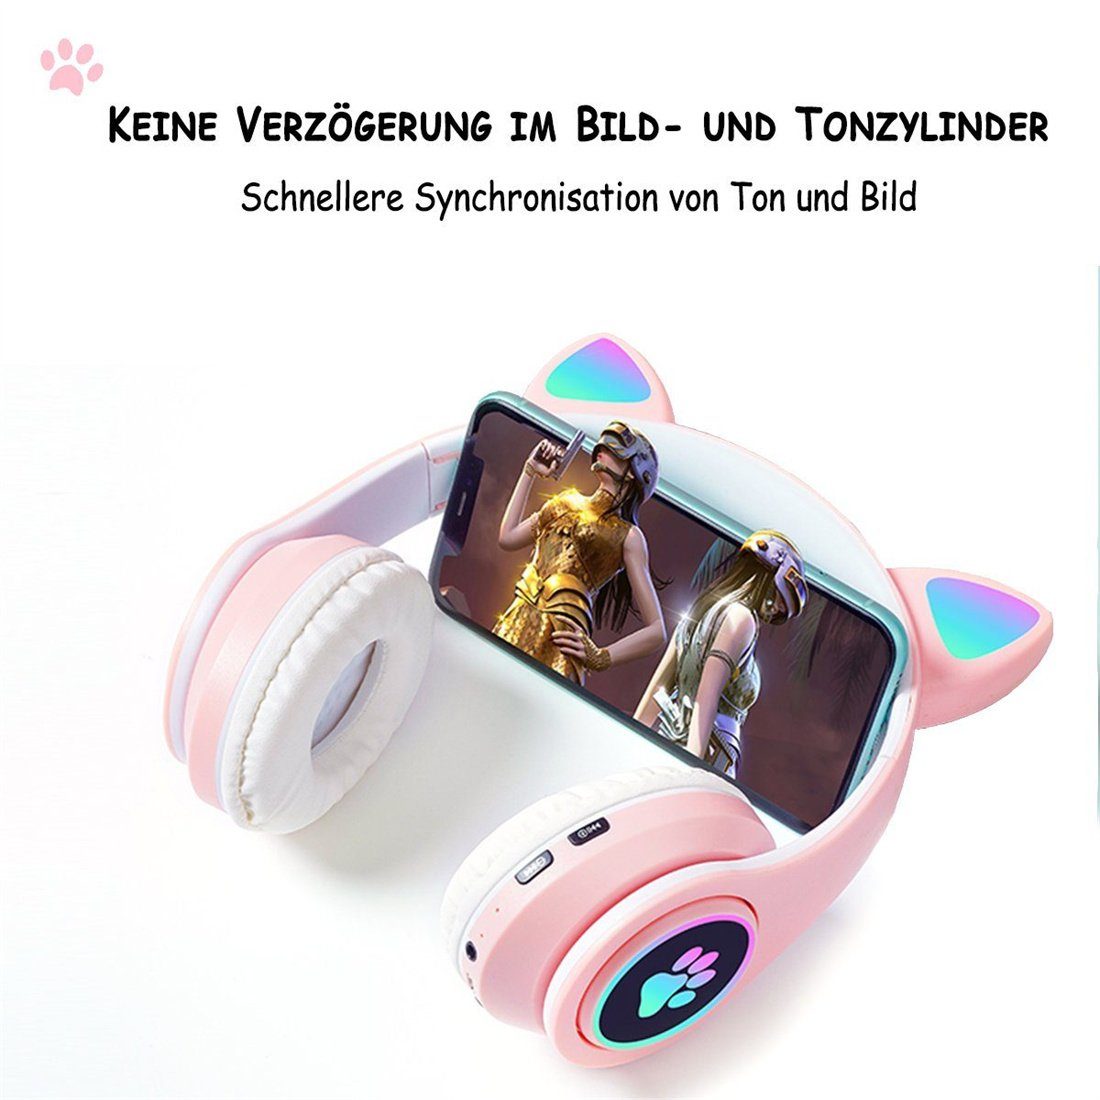 Rosa Gaming-Headset, DAYUT Bluetooth-Kopfhörer Mädchen, Headset für